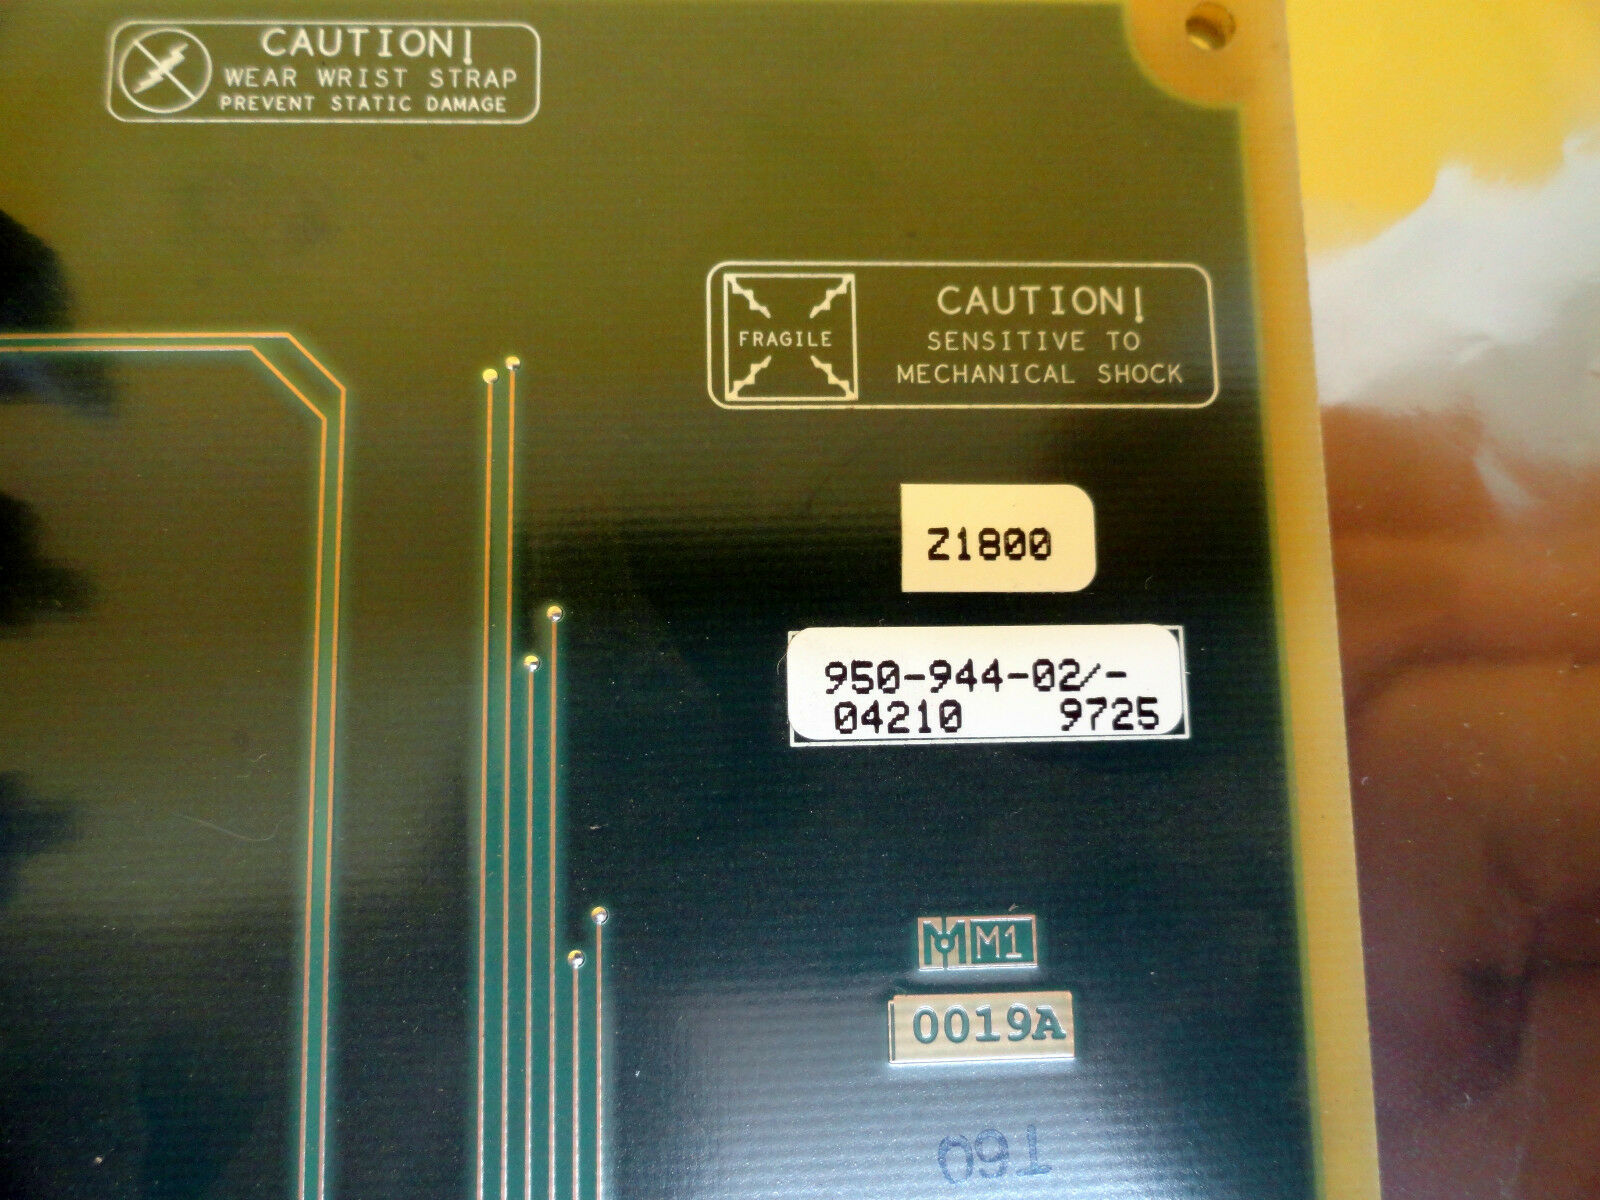 泰瑞达接口 PCB 950-944-02/04210 二手正常工作 